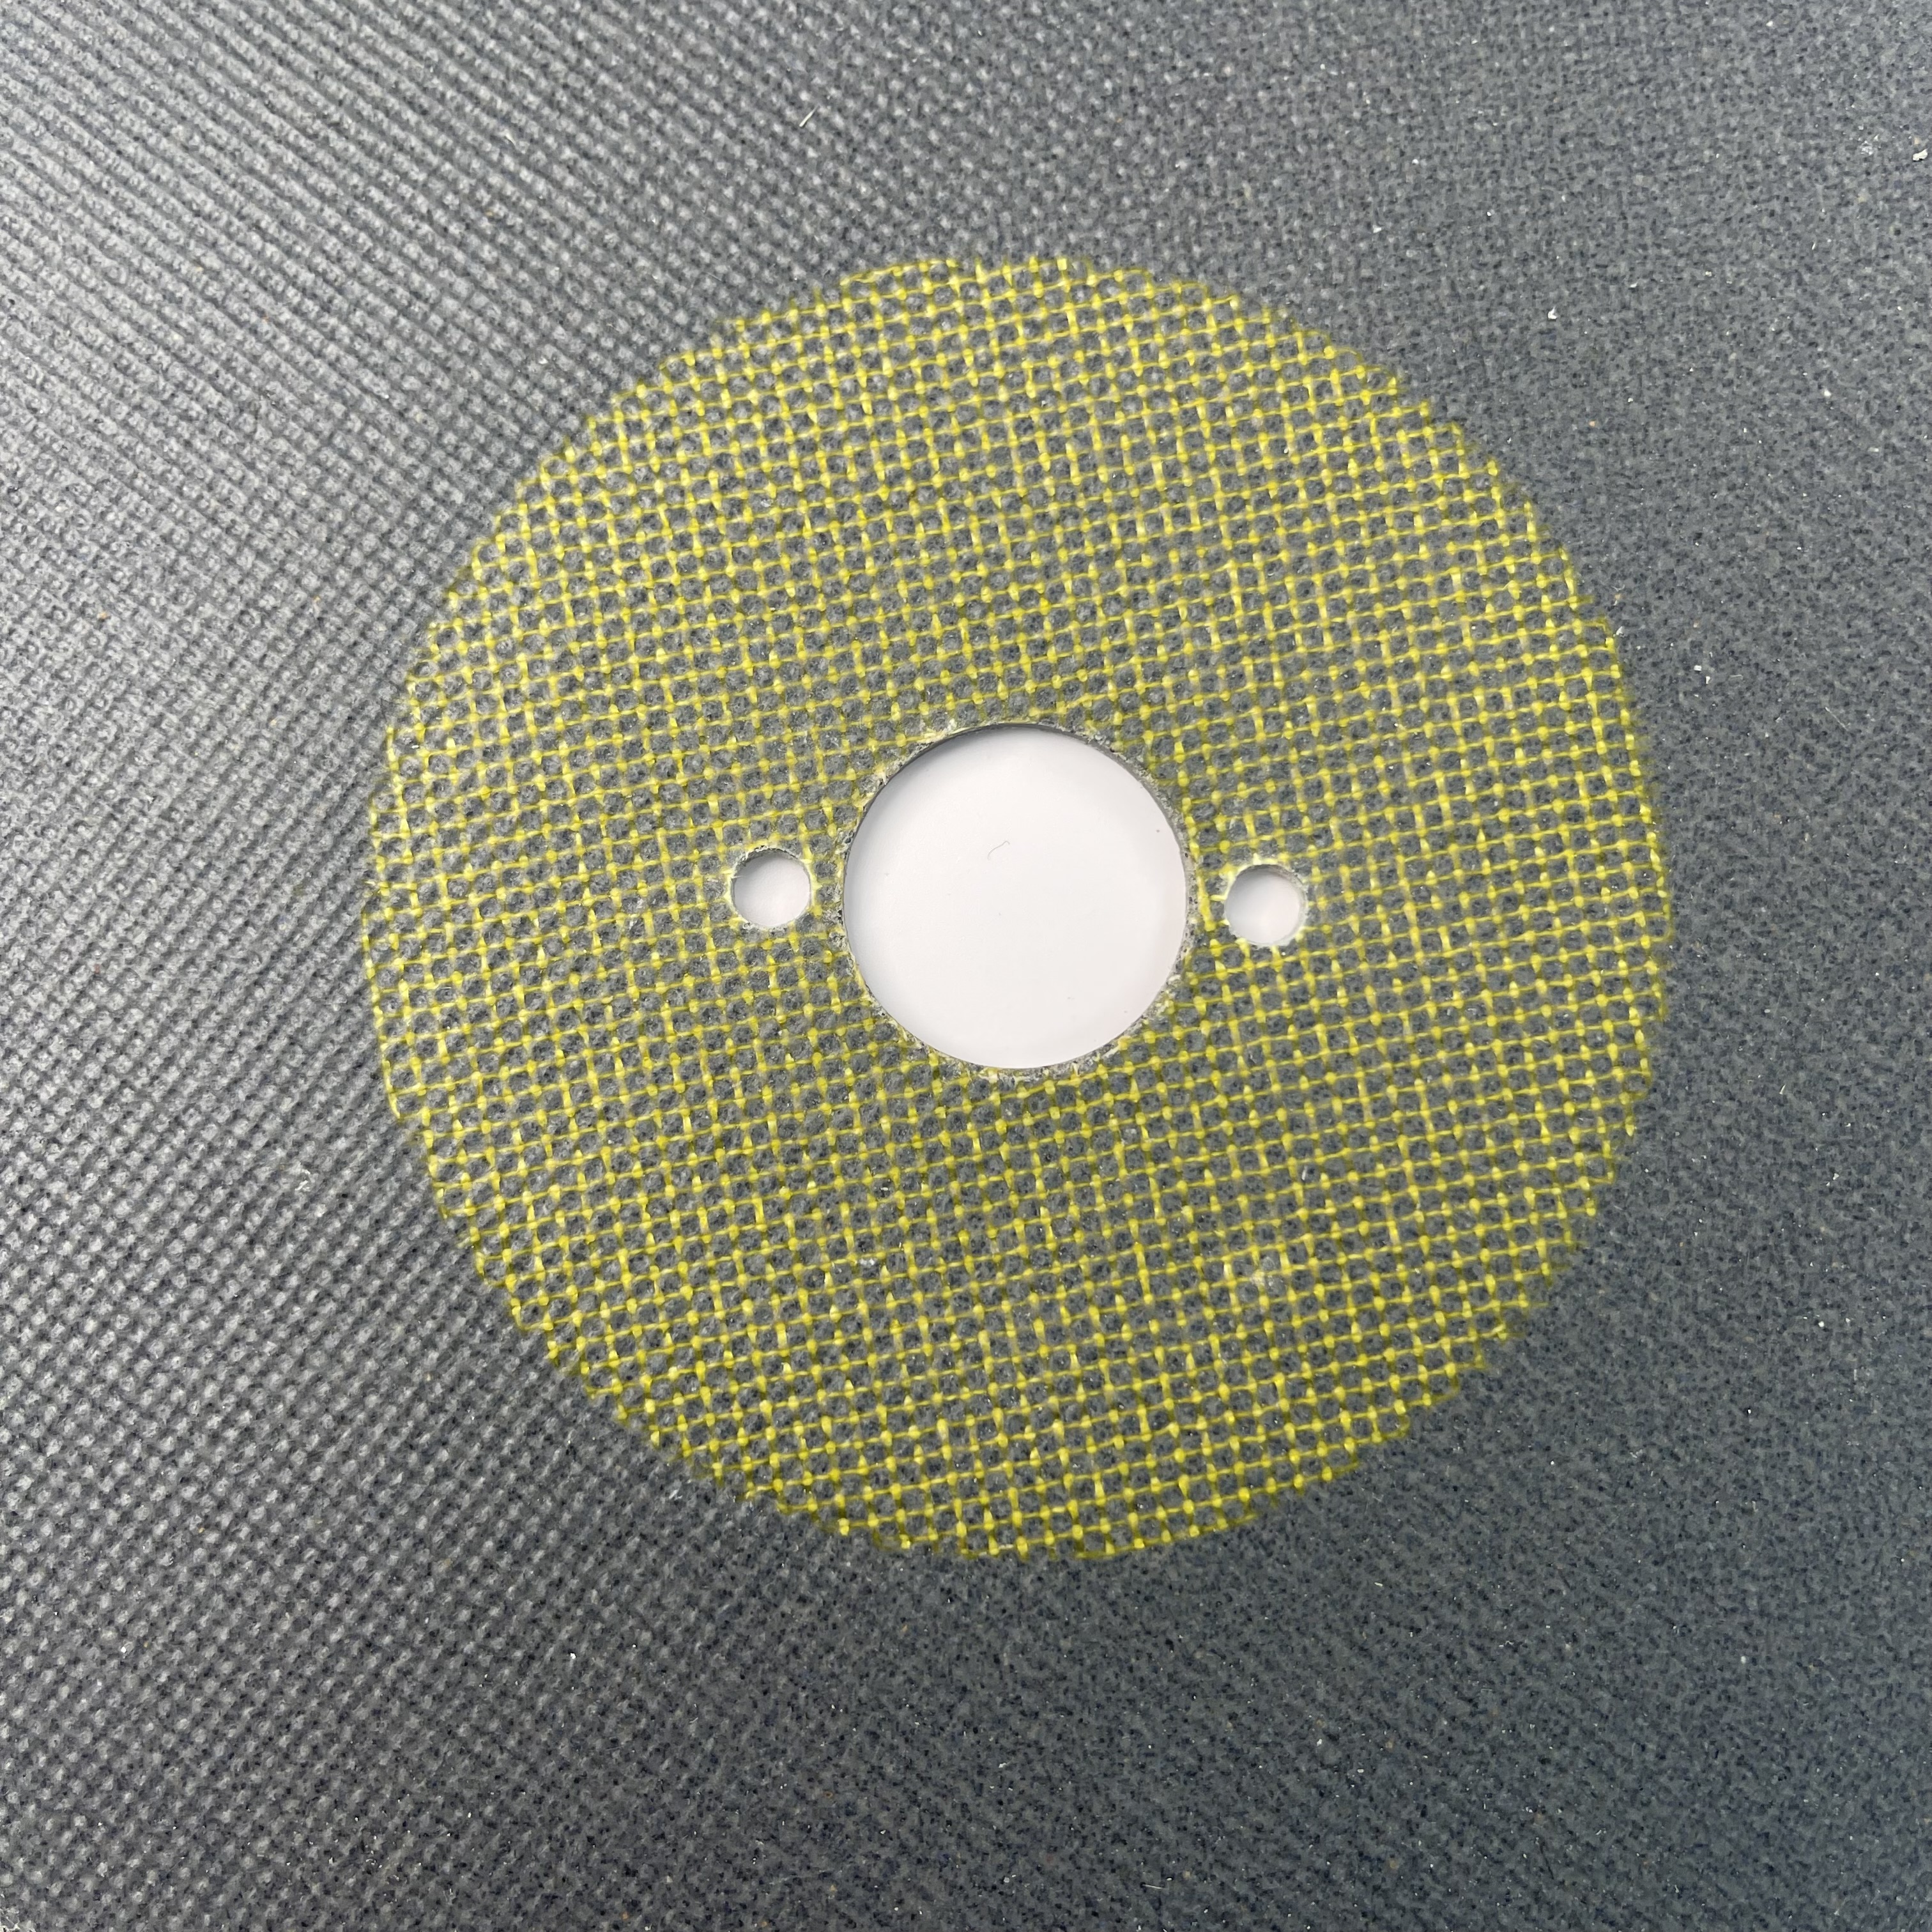  портативный шлифовальный станок для лазерной пайки, чистовой круг 8 дюймов x 3,0 мм x 1 дюйм для алюминия